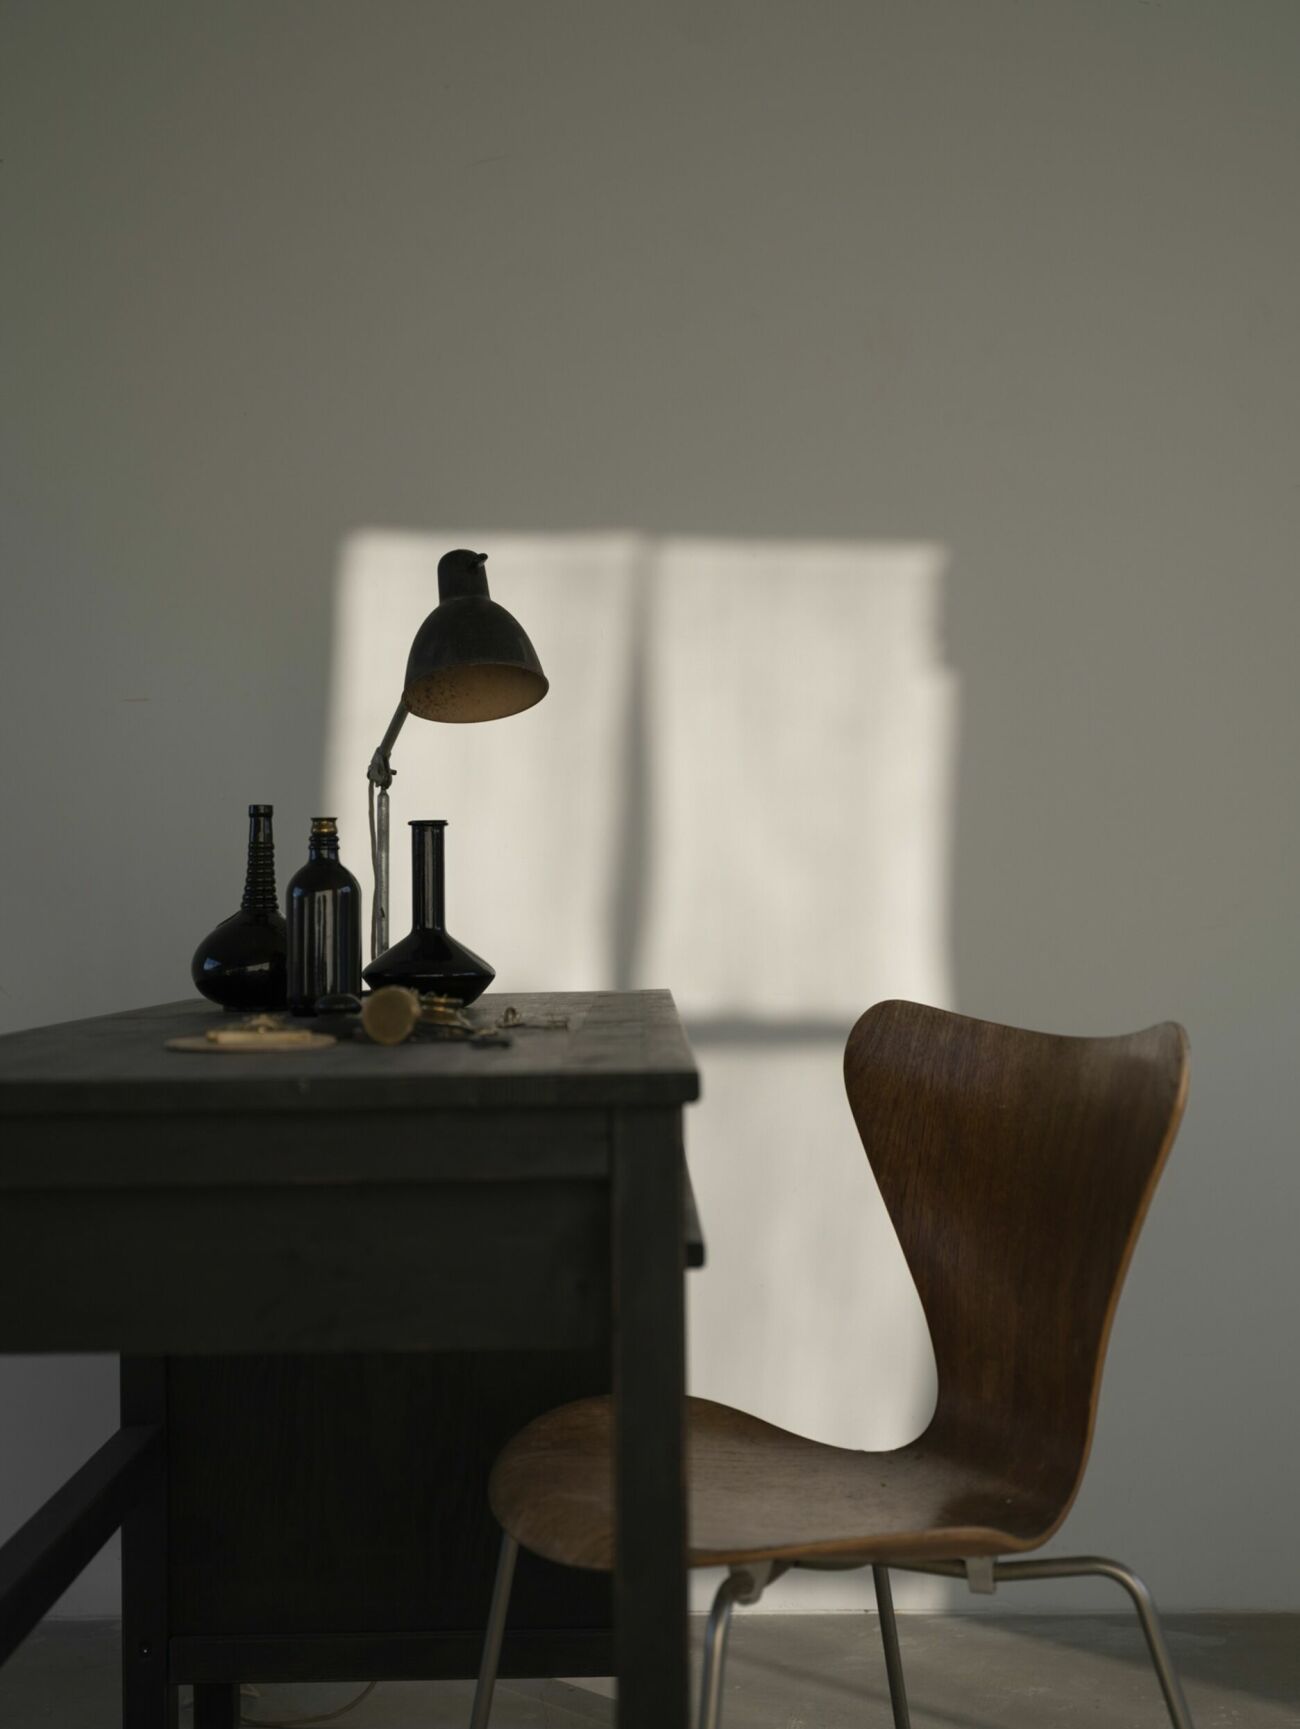 Lampan är från Lampe Gras, 1920-talsform av Bernard-Albin Gras. Stolen är Arne Jacobsens klassiker 7:an.